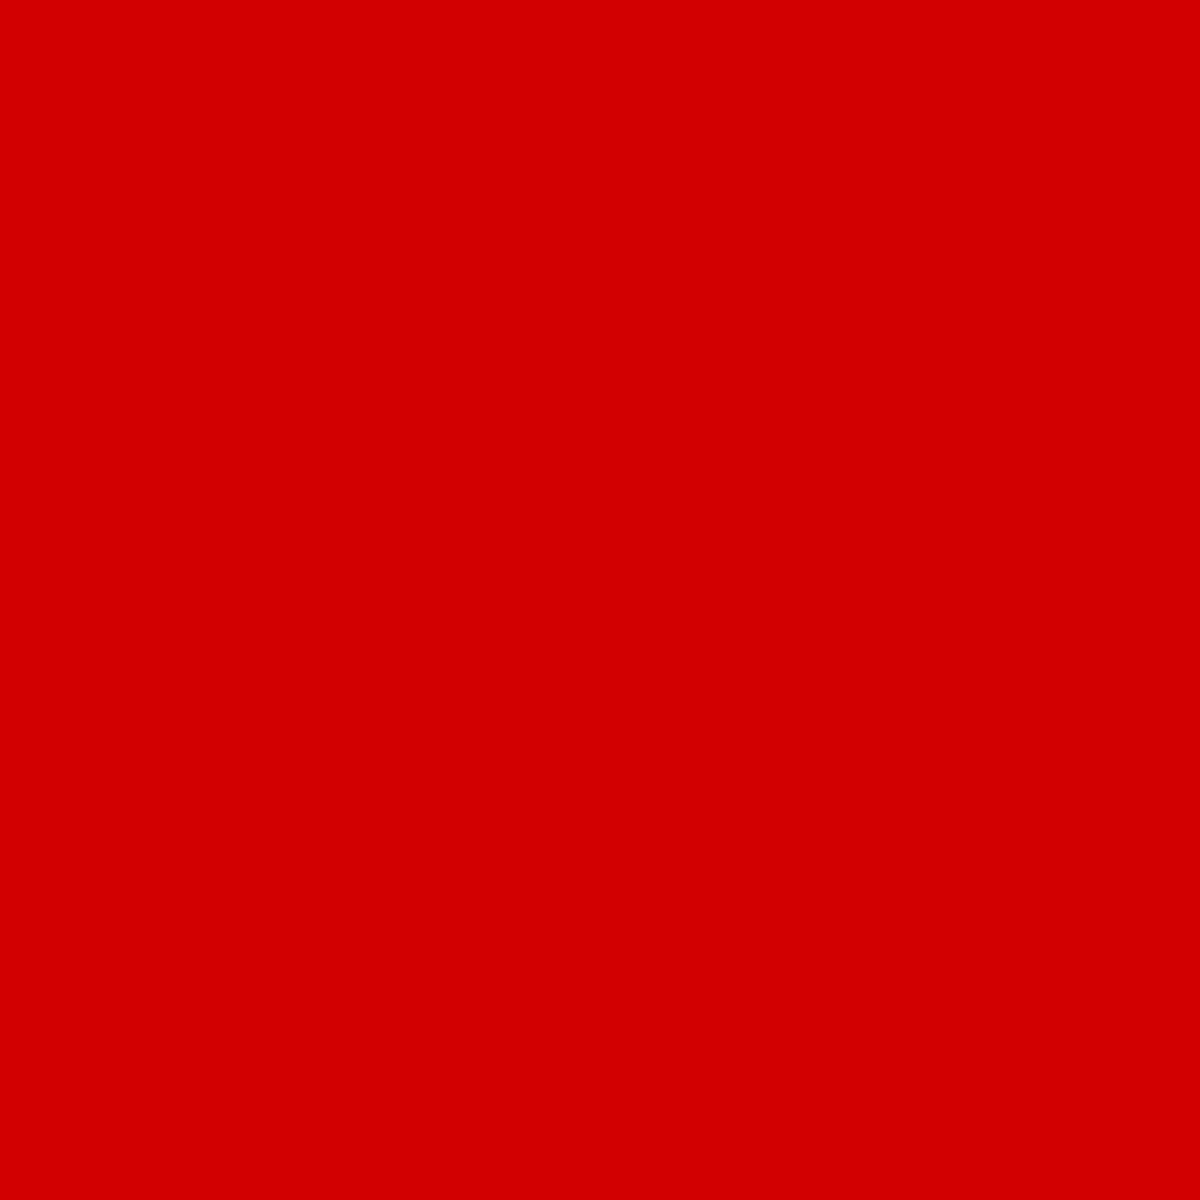 3M Envision transparante kleurenfolie 3730-33L rood 1,22m x 45,7m